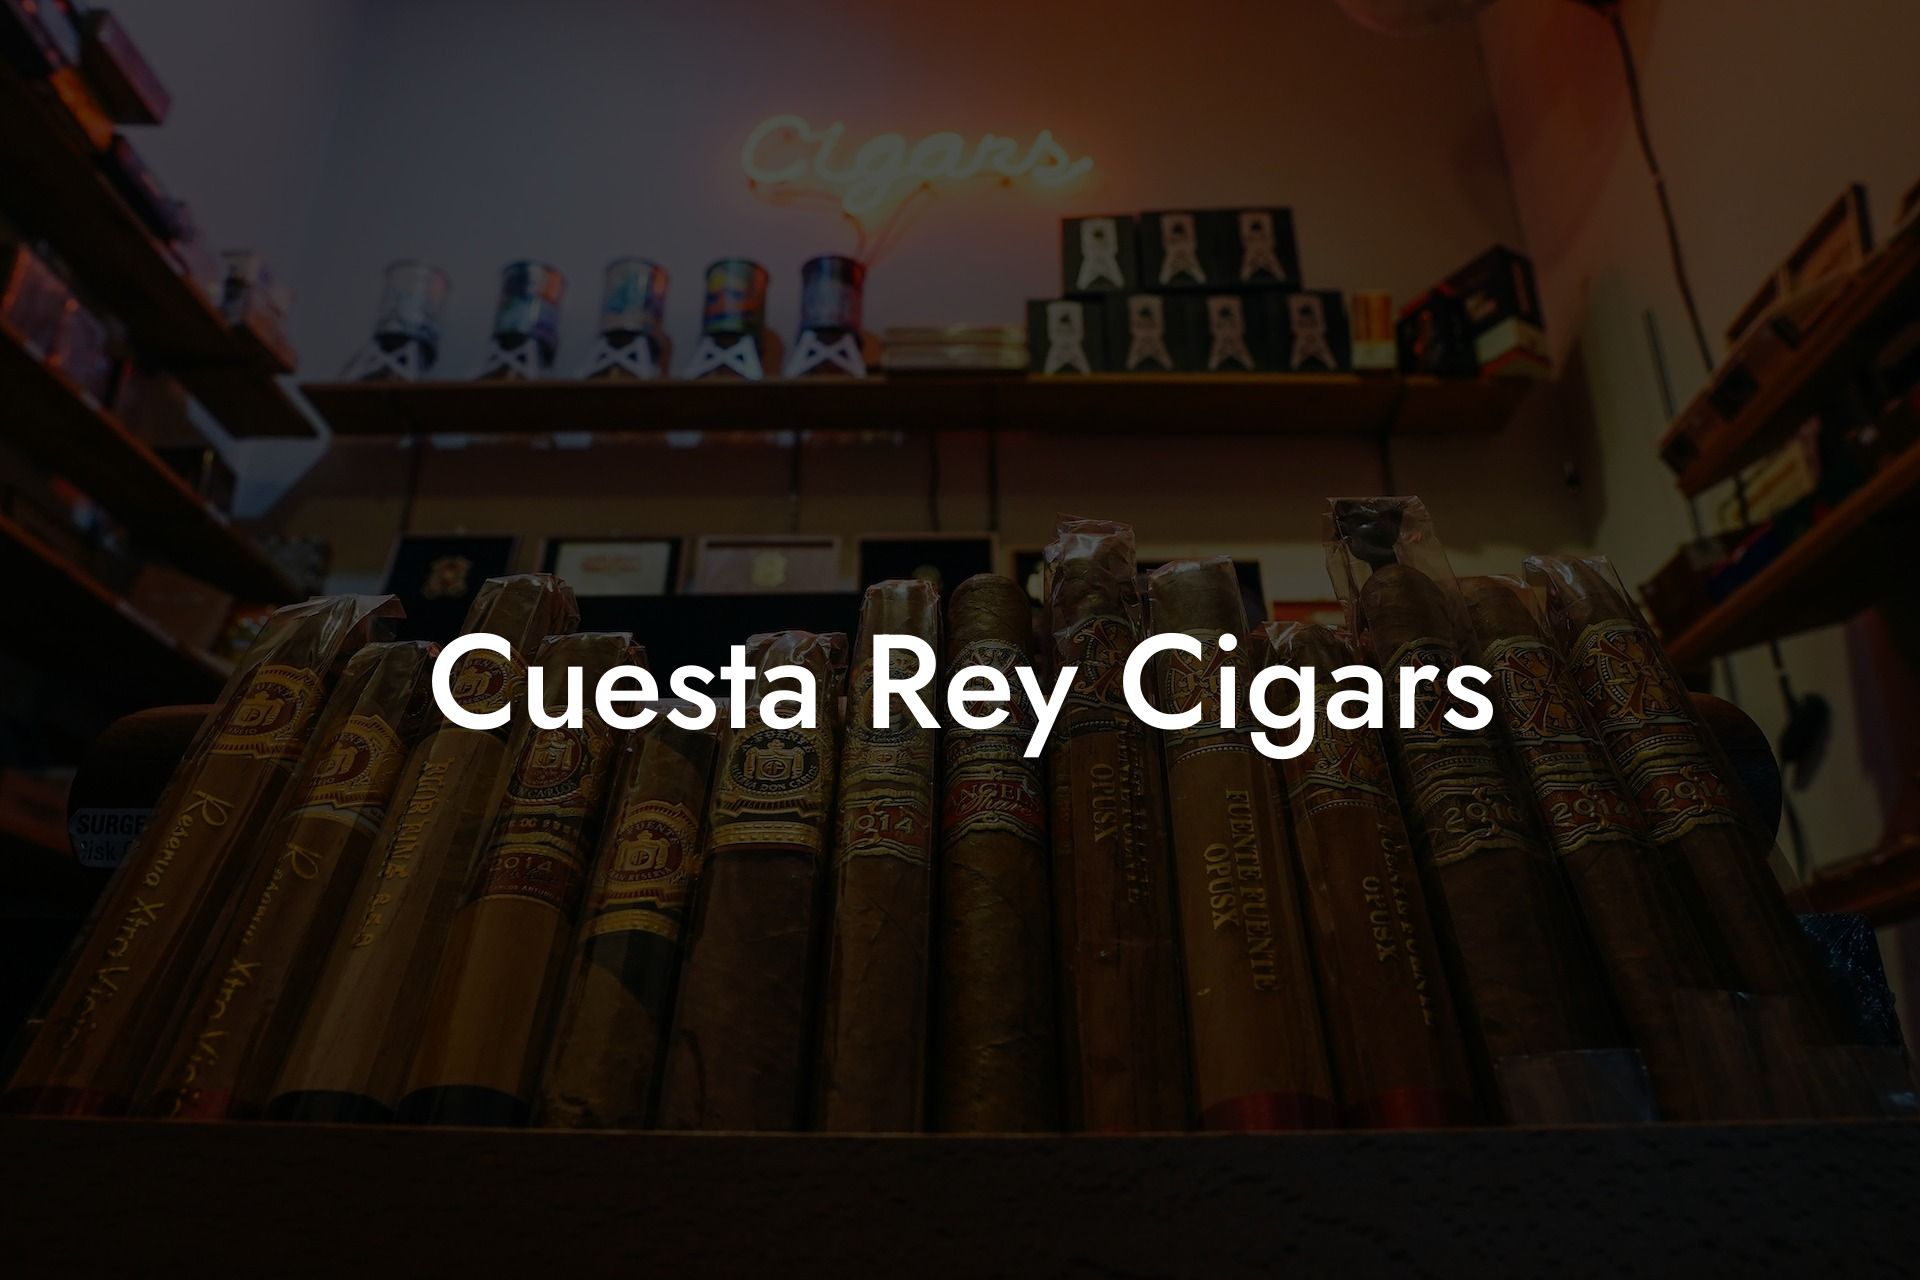 Cuesta Rey Cigars